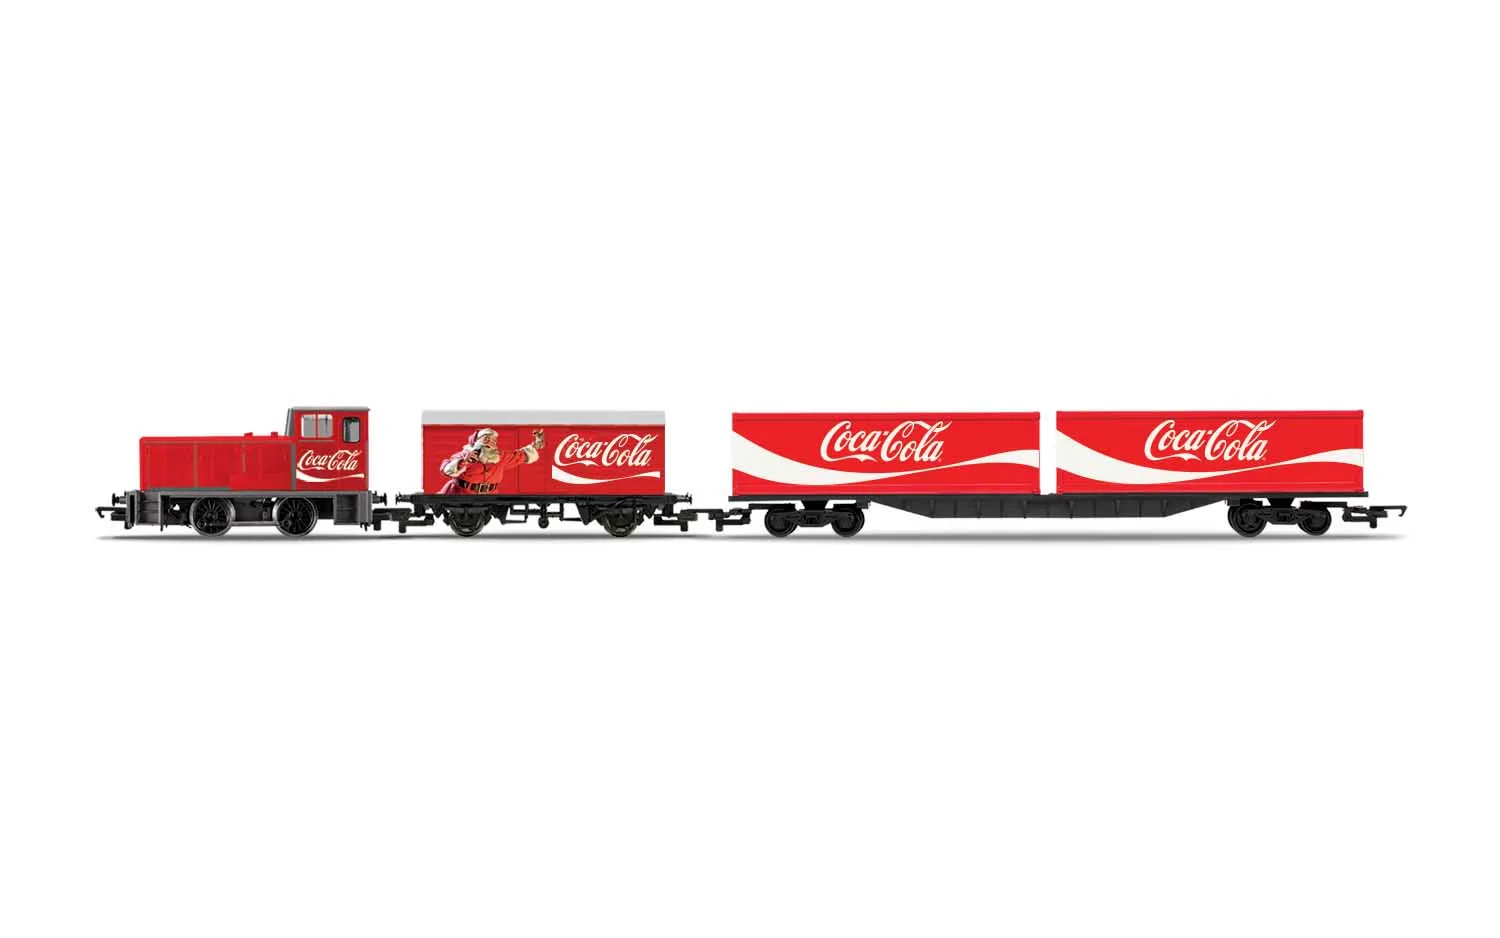 Tren de Navidad de Coca Cola – versión con enchufe UE